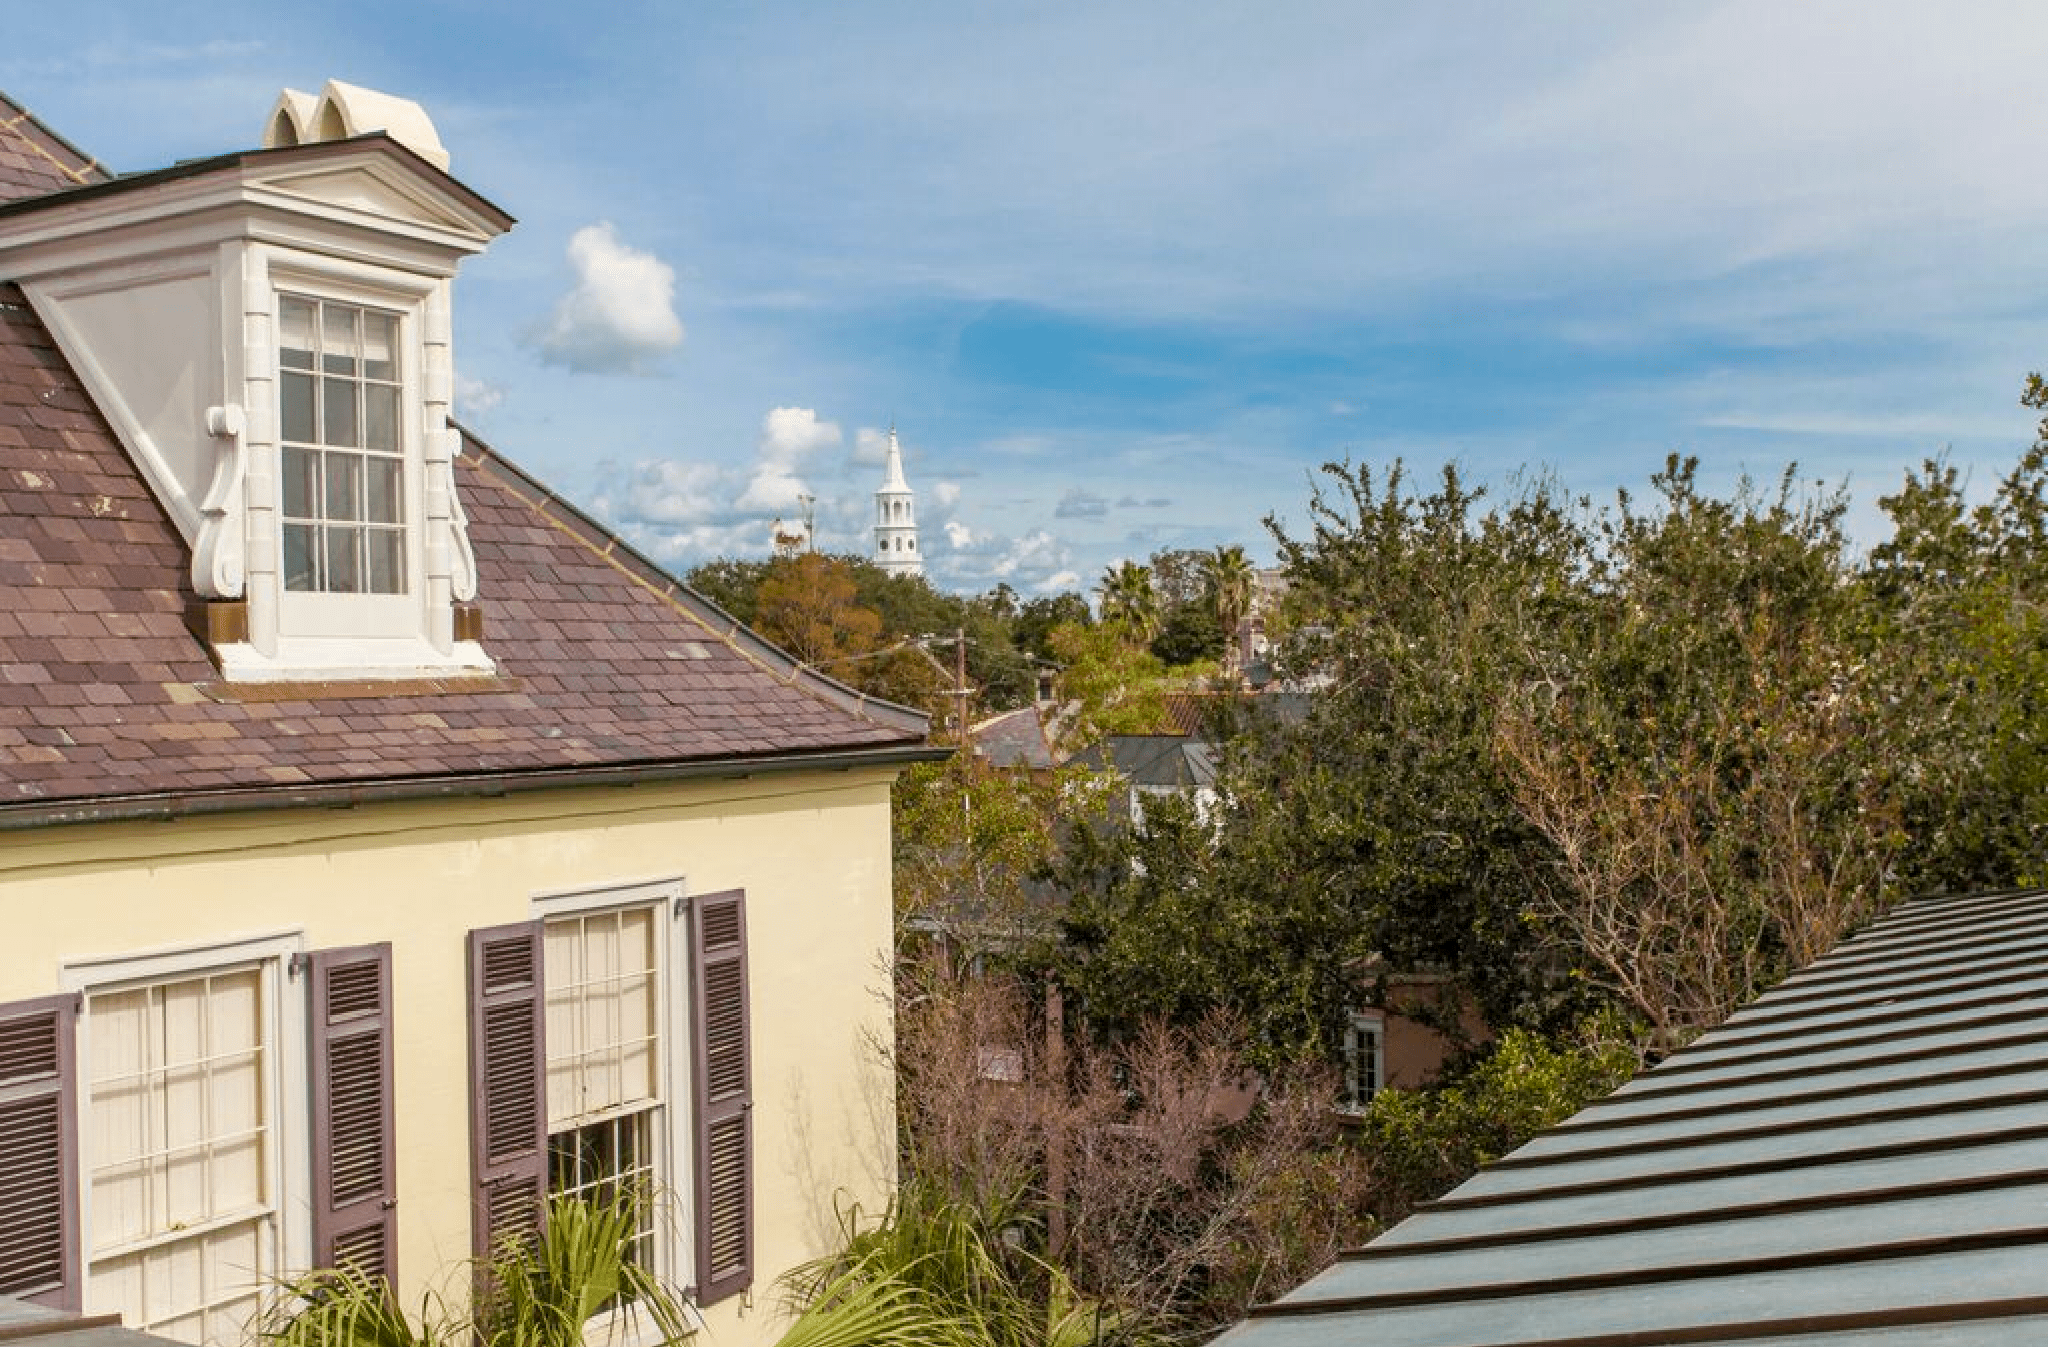 Charleston roofline